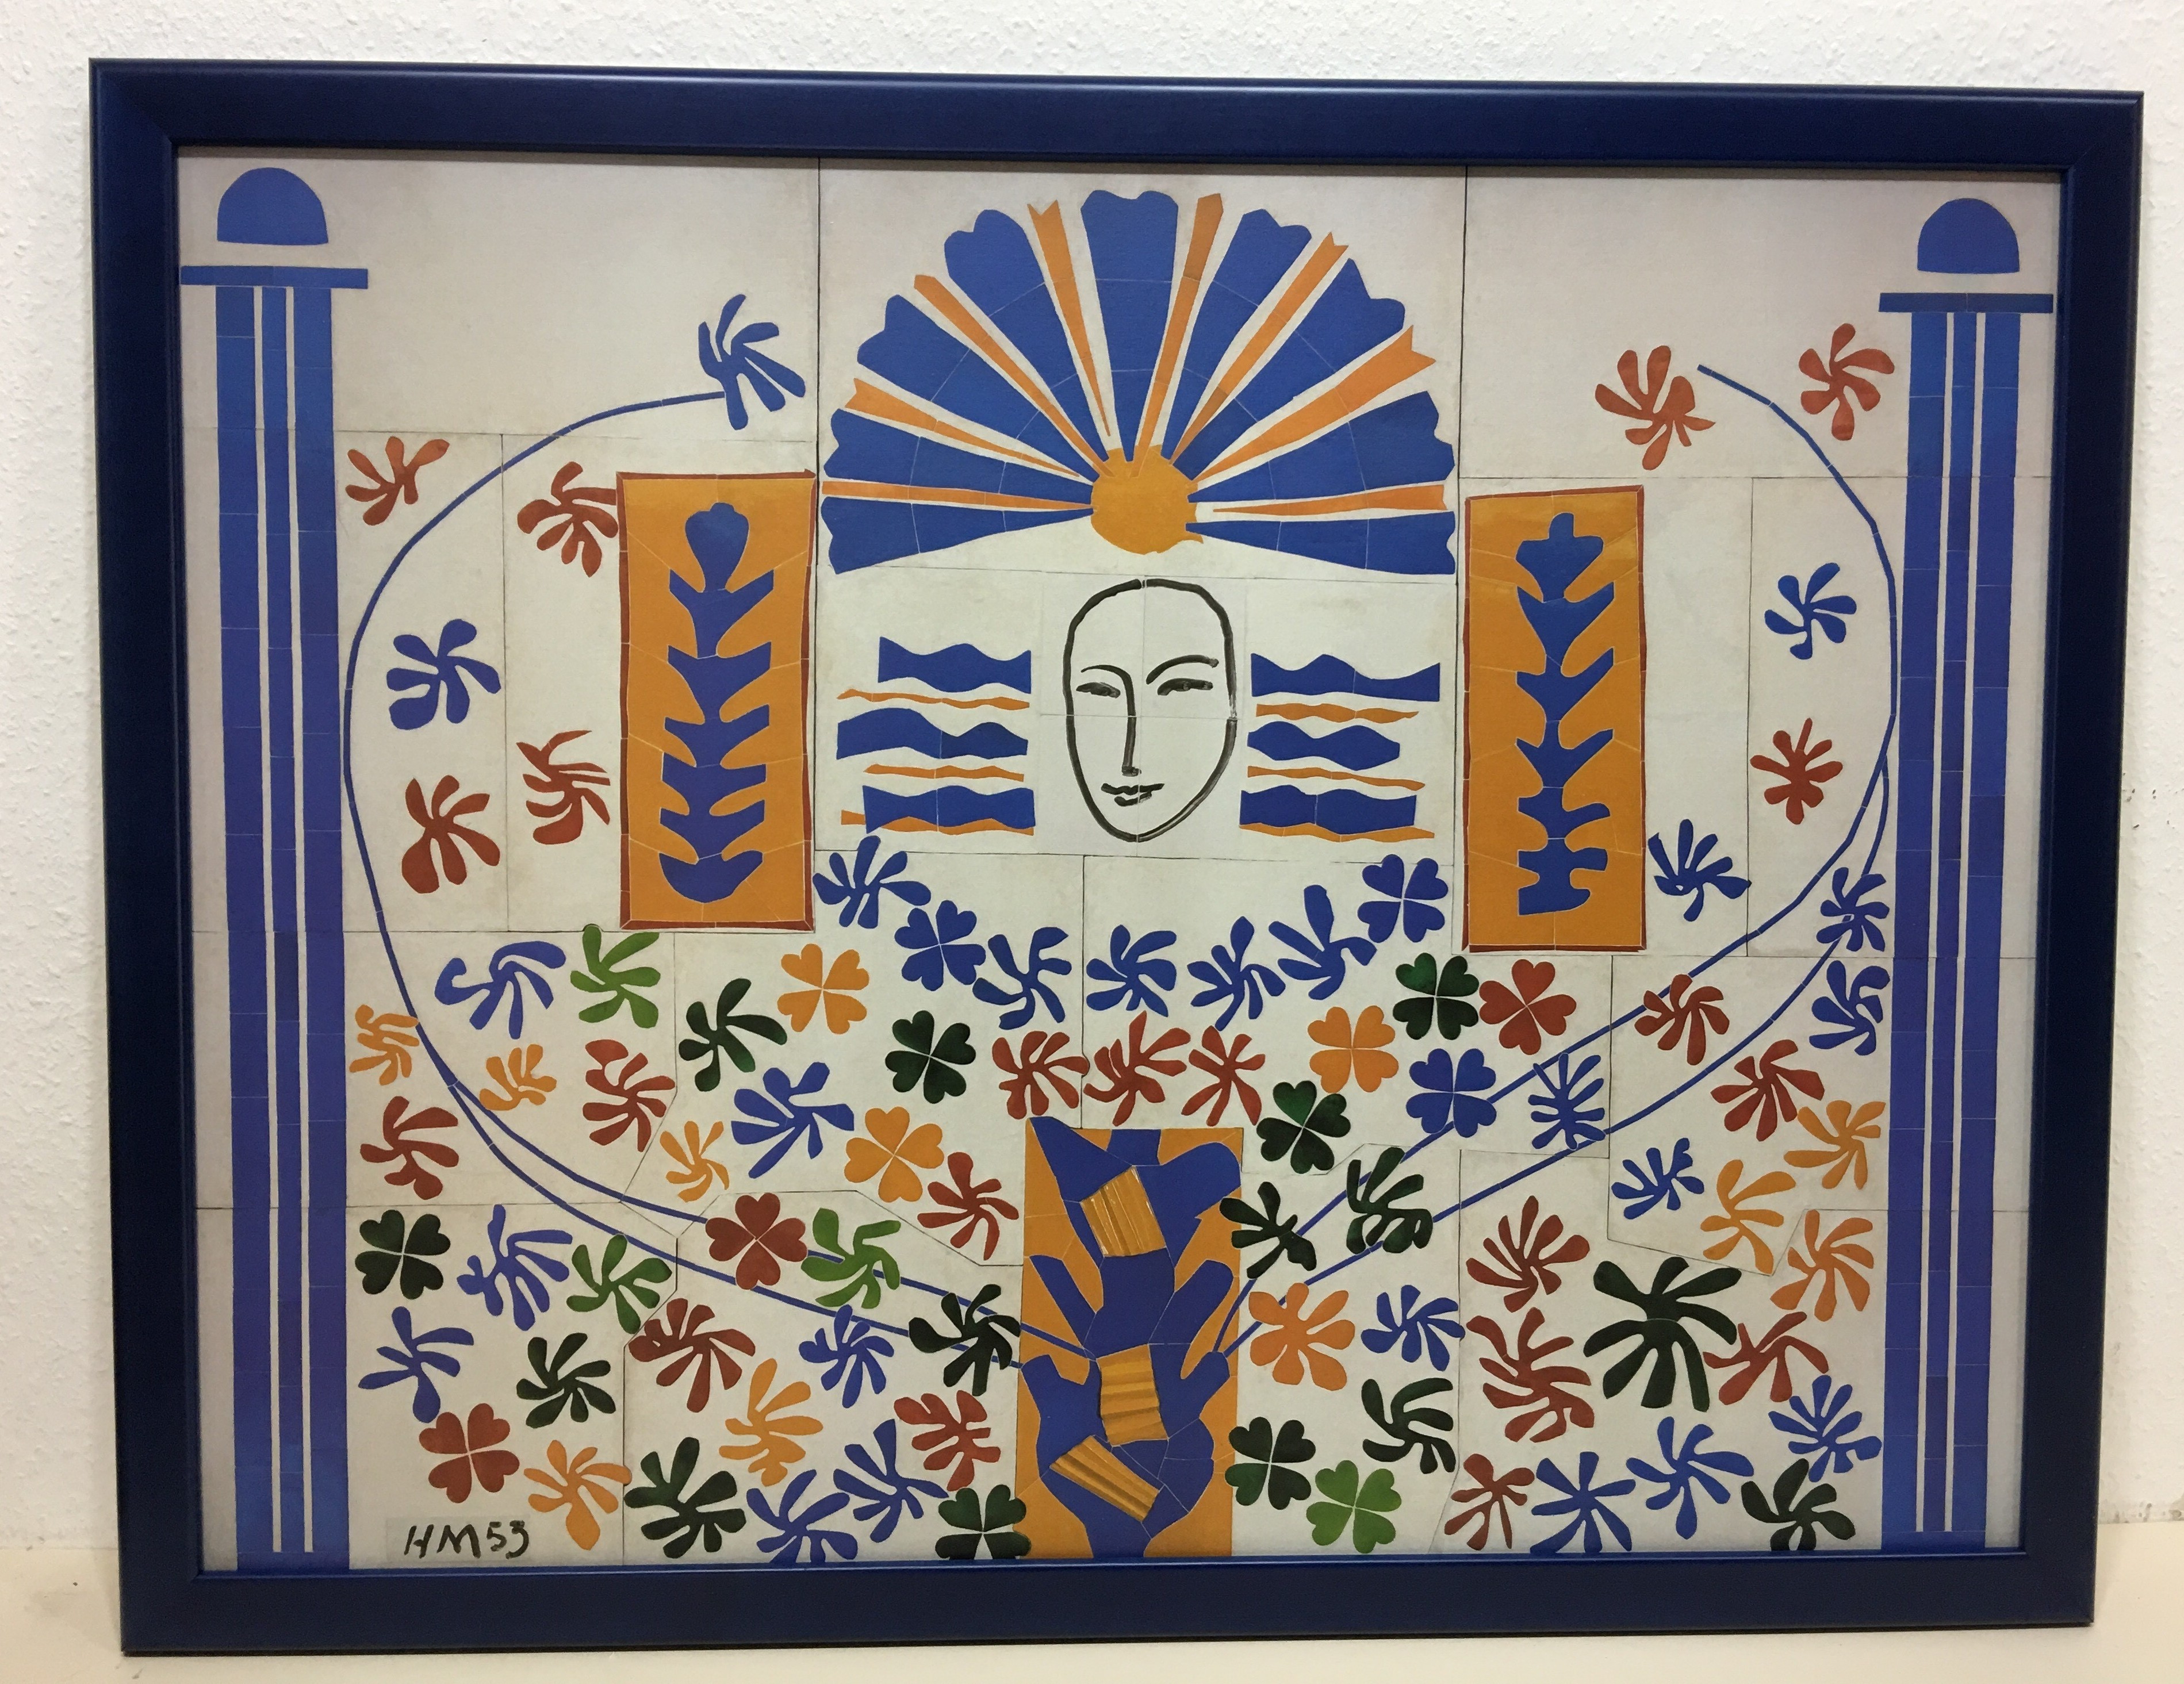 Gerahmtes Bild, Holz blau, Folie, letztes Exemplar,  Henri Matisse, Apollo (Wandbild, Gesicht, Säulen, Fauvismus, Klassische Moderne, Wohnzimmer, Schlafzimmer, bunt)